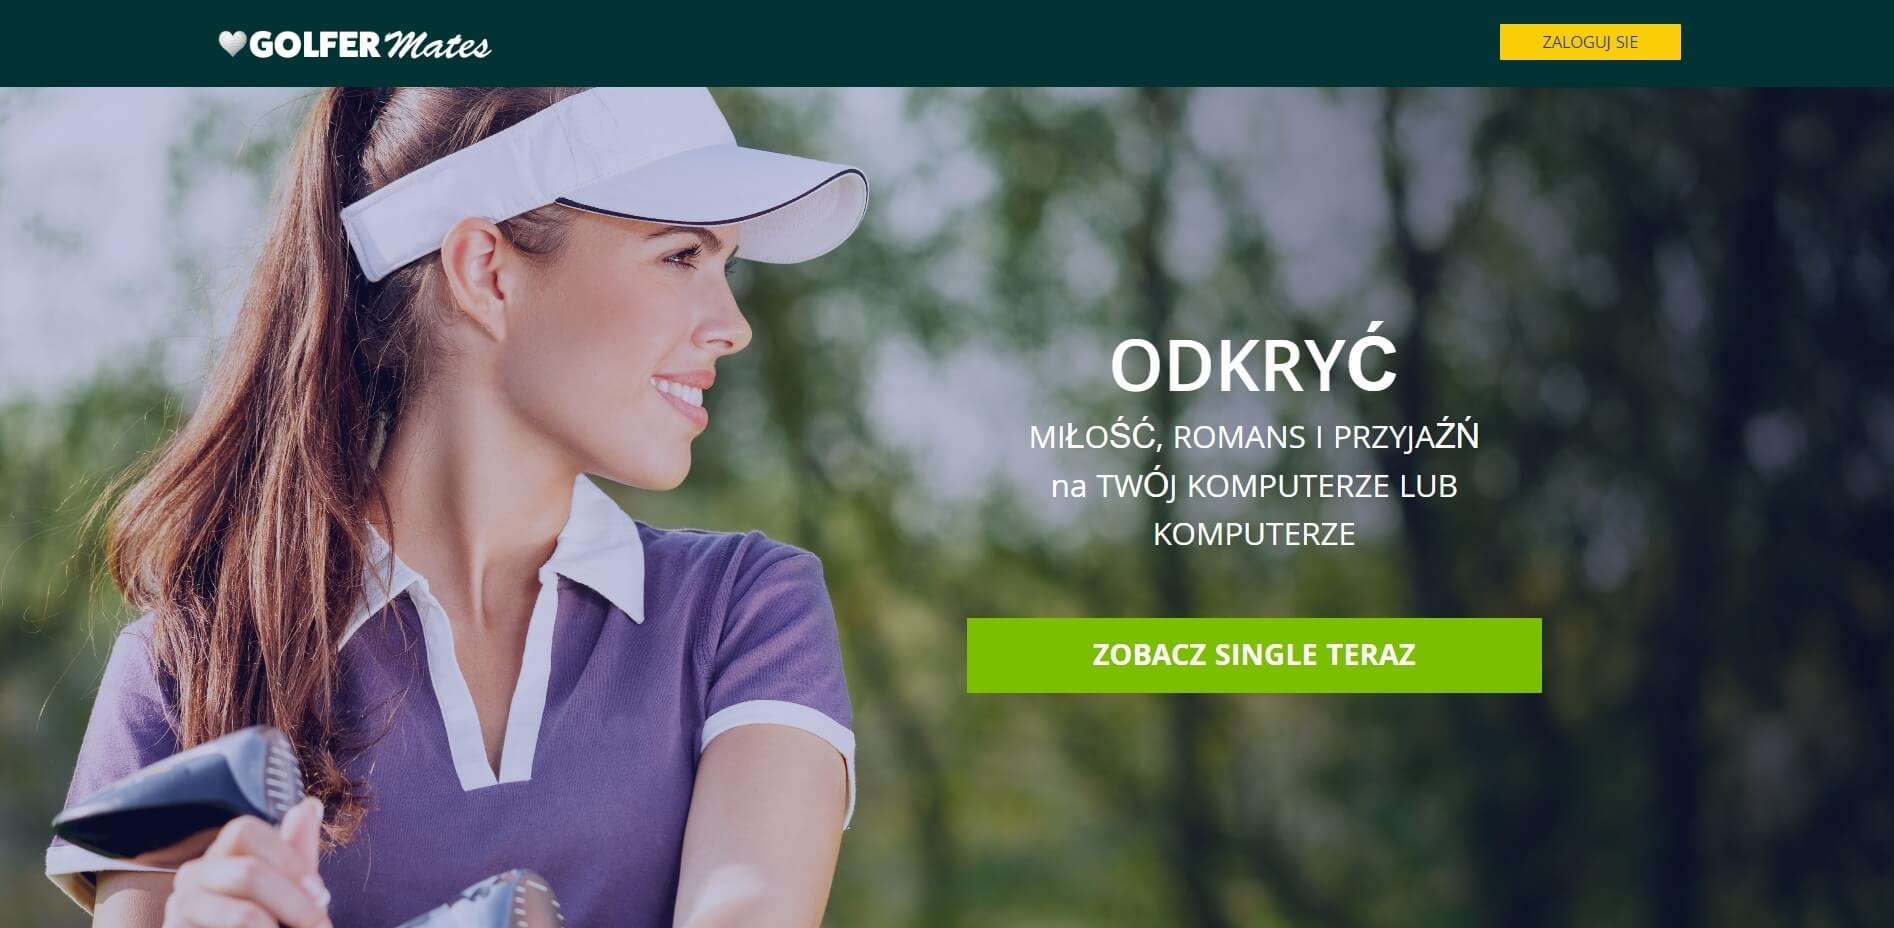 GolferMates Polska